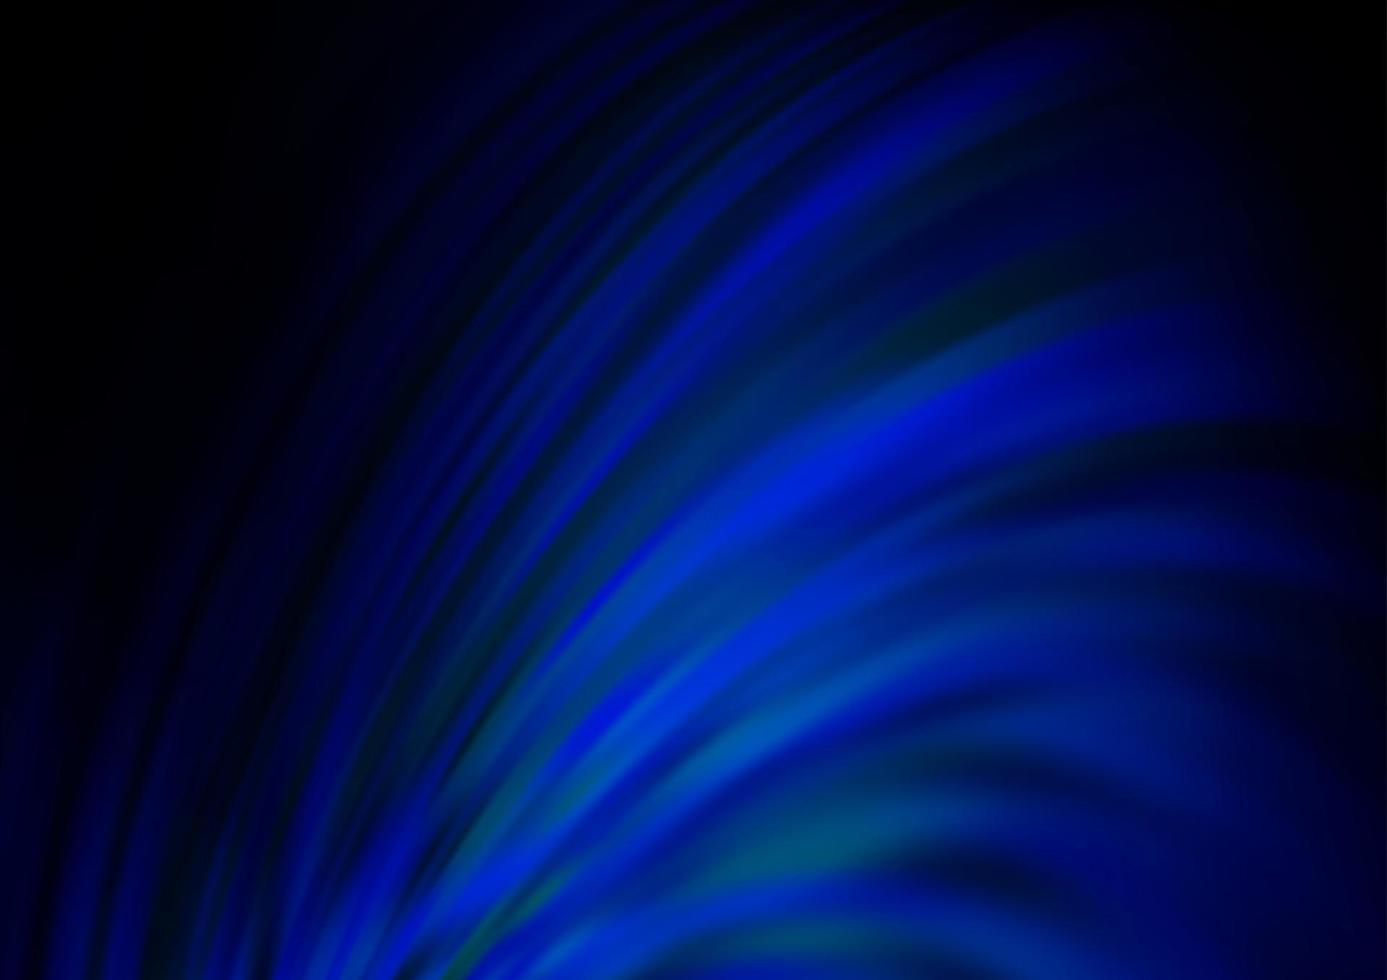 fundo vector azul escuro com formas de bolha.